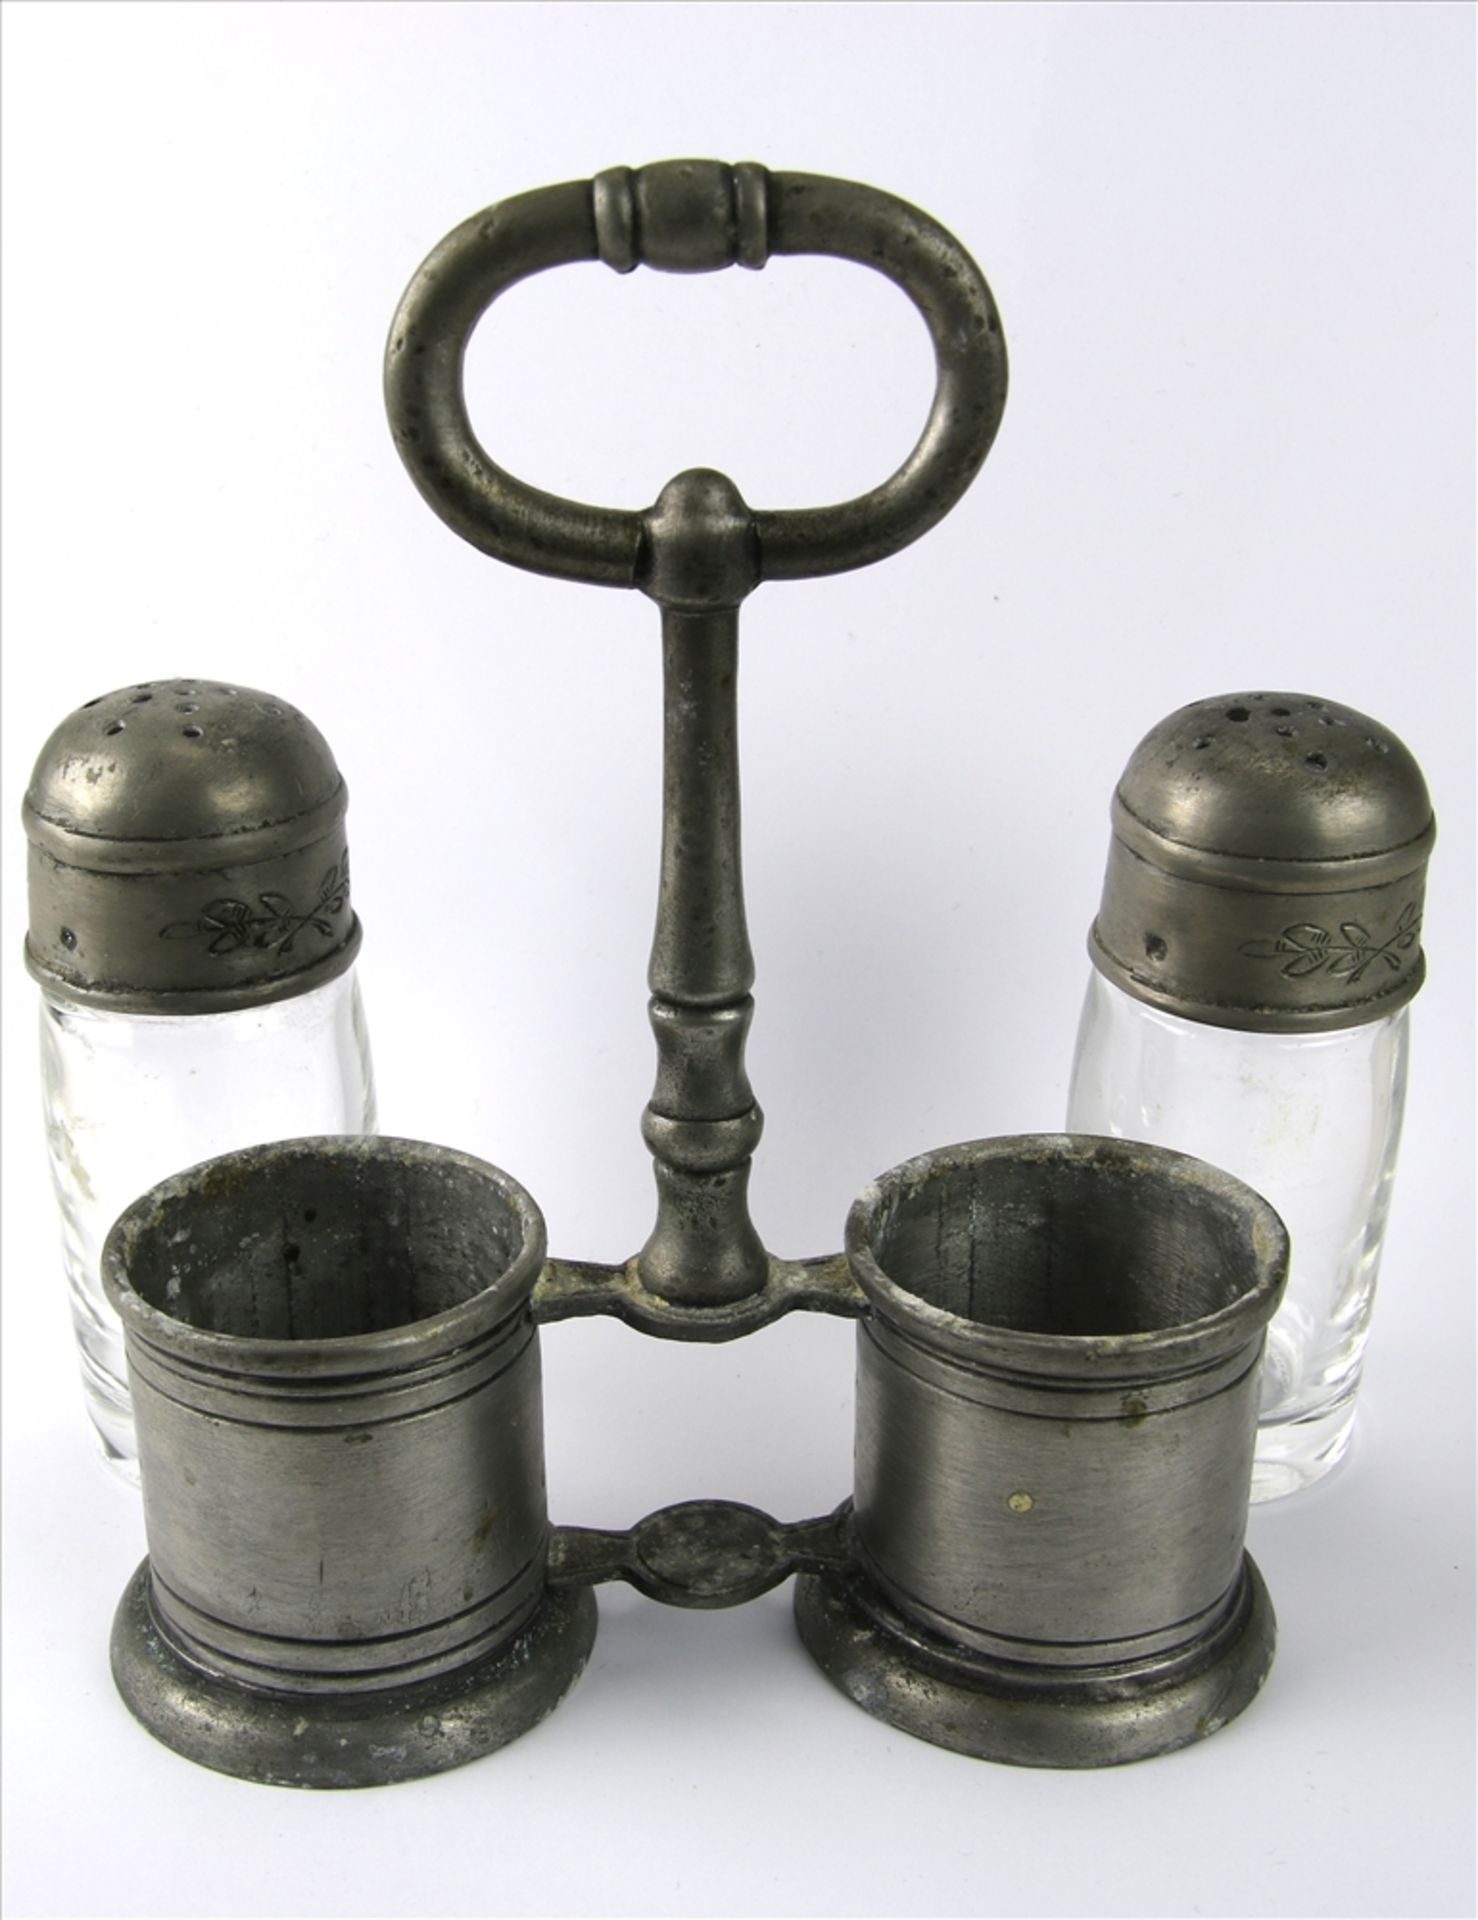 Menage Pfeffer-Salz um 1900 im Barockstil. Zinn und Glas. Größe ca. 14 x 8 cm, Höhe ca. 12 cm. - Bild 2 aus 3